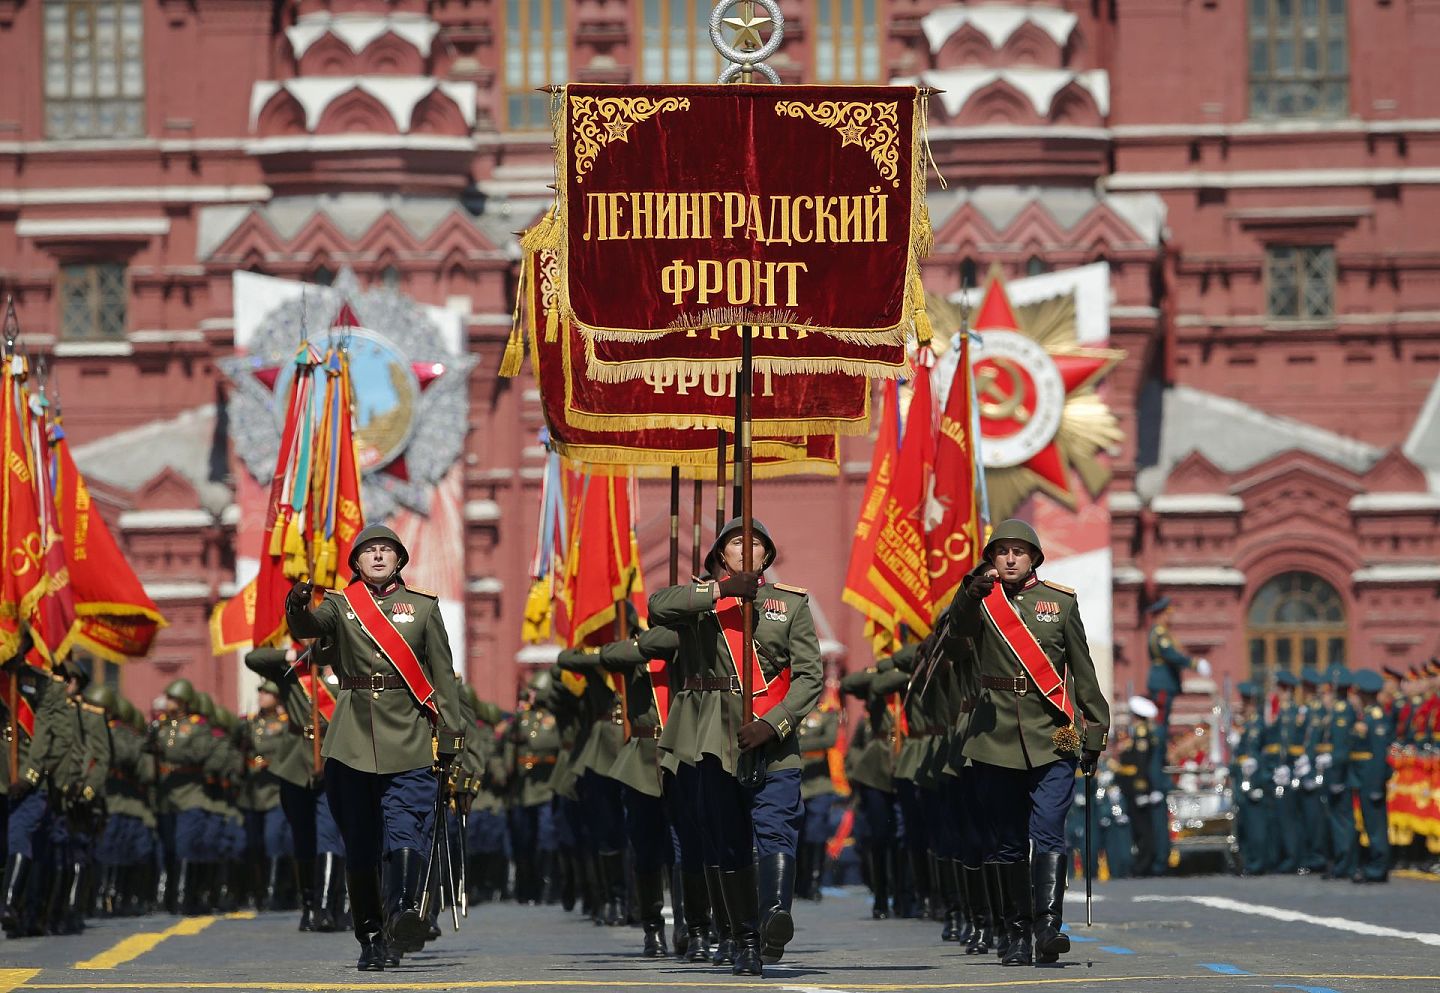 俄罗斯的红场阅兵展示的是俄罗斯强大的军事力量，它背后重要的意义在于普京提振民心。（AP）